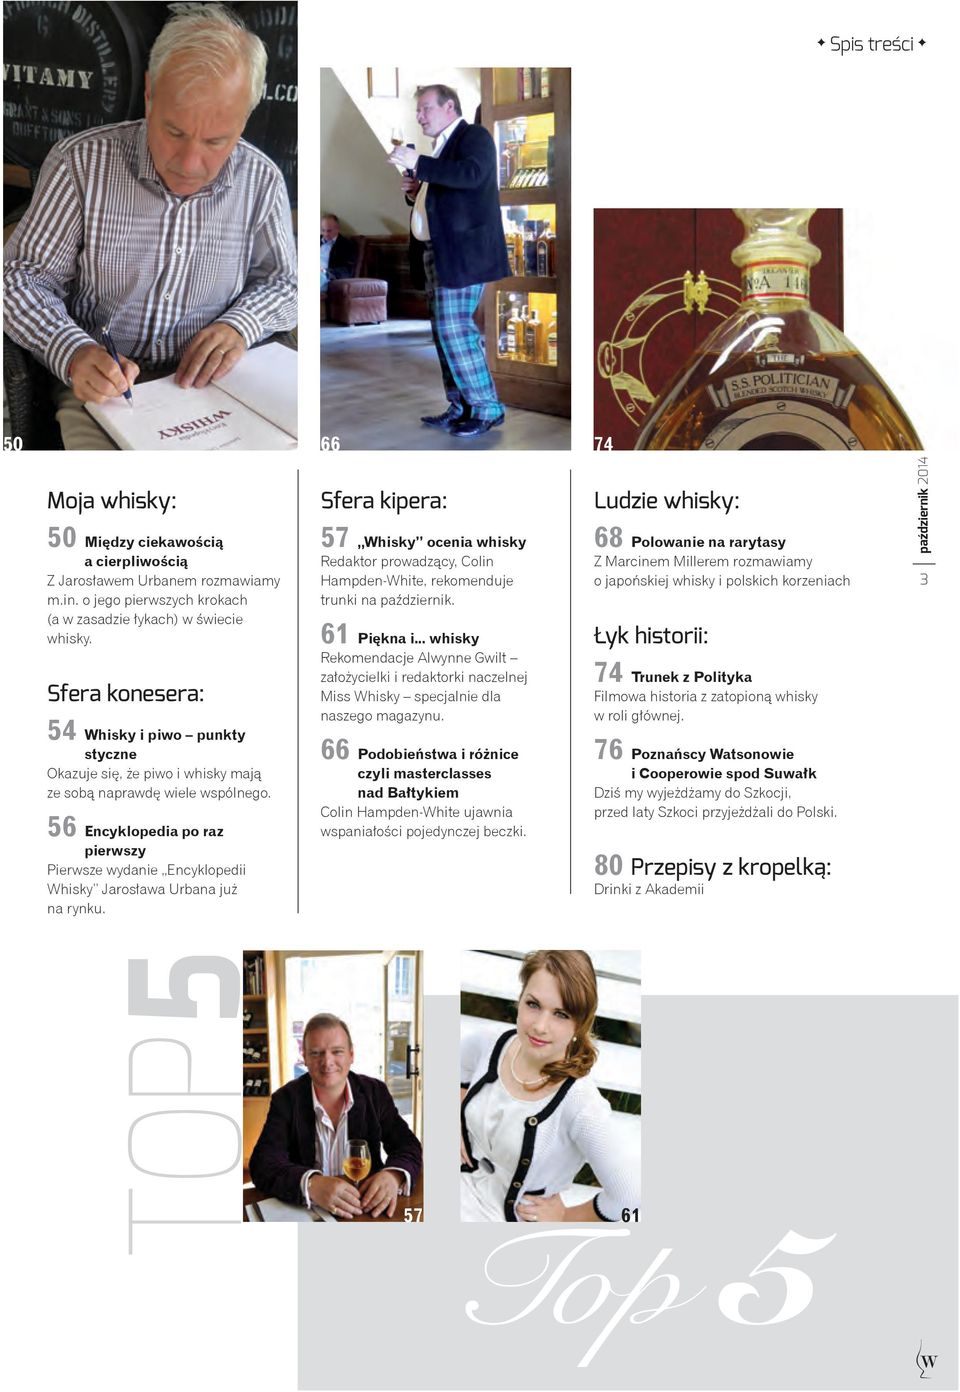 56 Encyklopedia po raz pierwszy Pierwsze wydanie Encyklopedii Whisky Jarosława Urbana już na rynku.